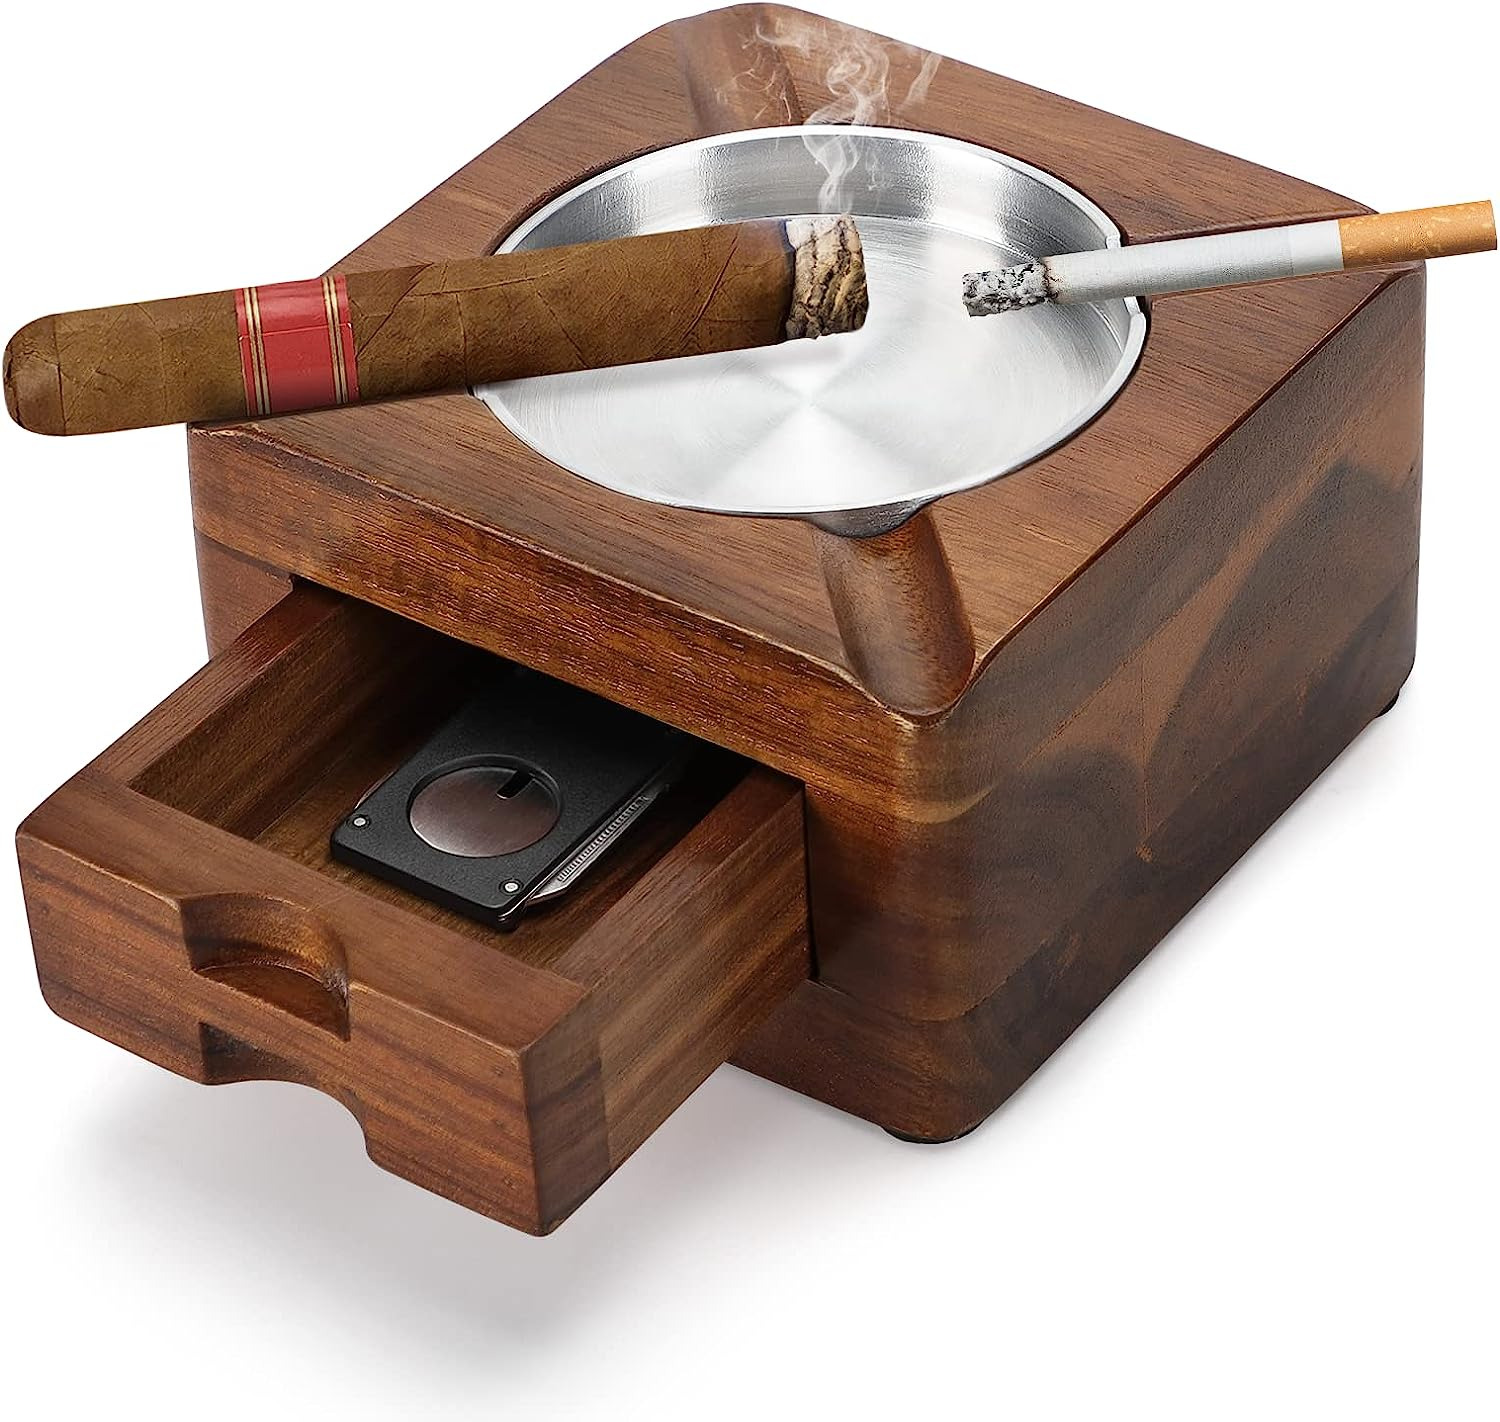 Cigar Ashtray, Wooden Ashtray, Square Ashtray 4 Slots Cigar Holder with Cigar